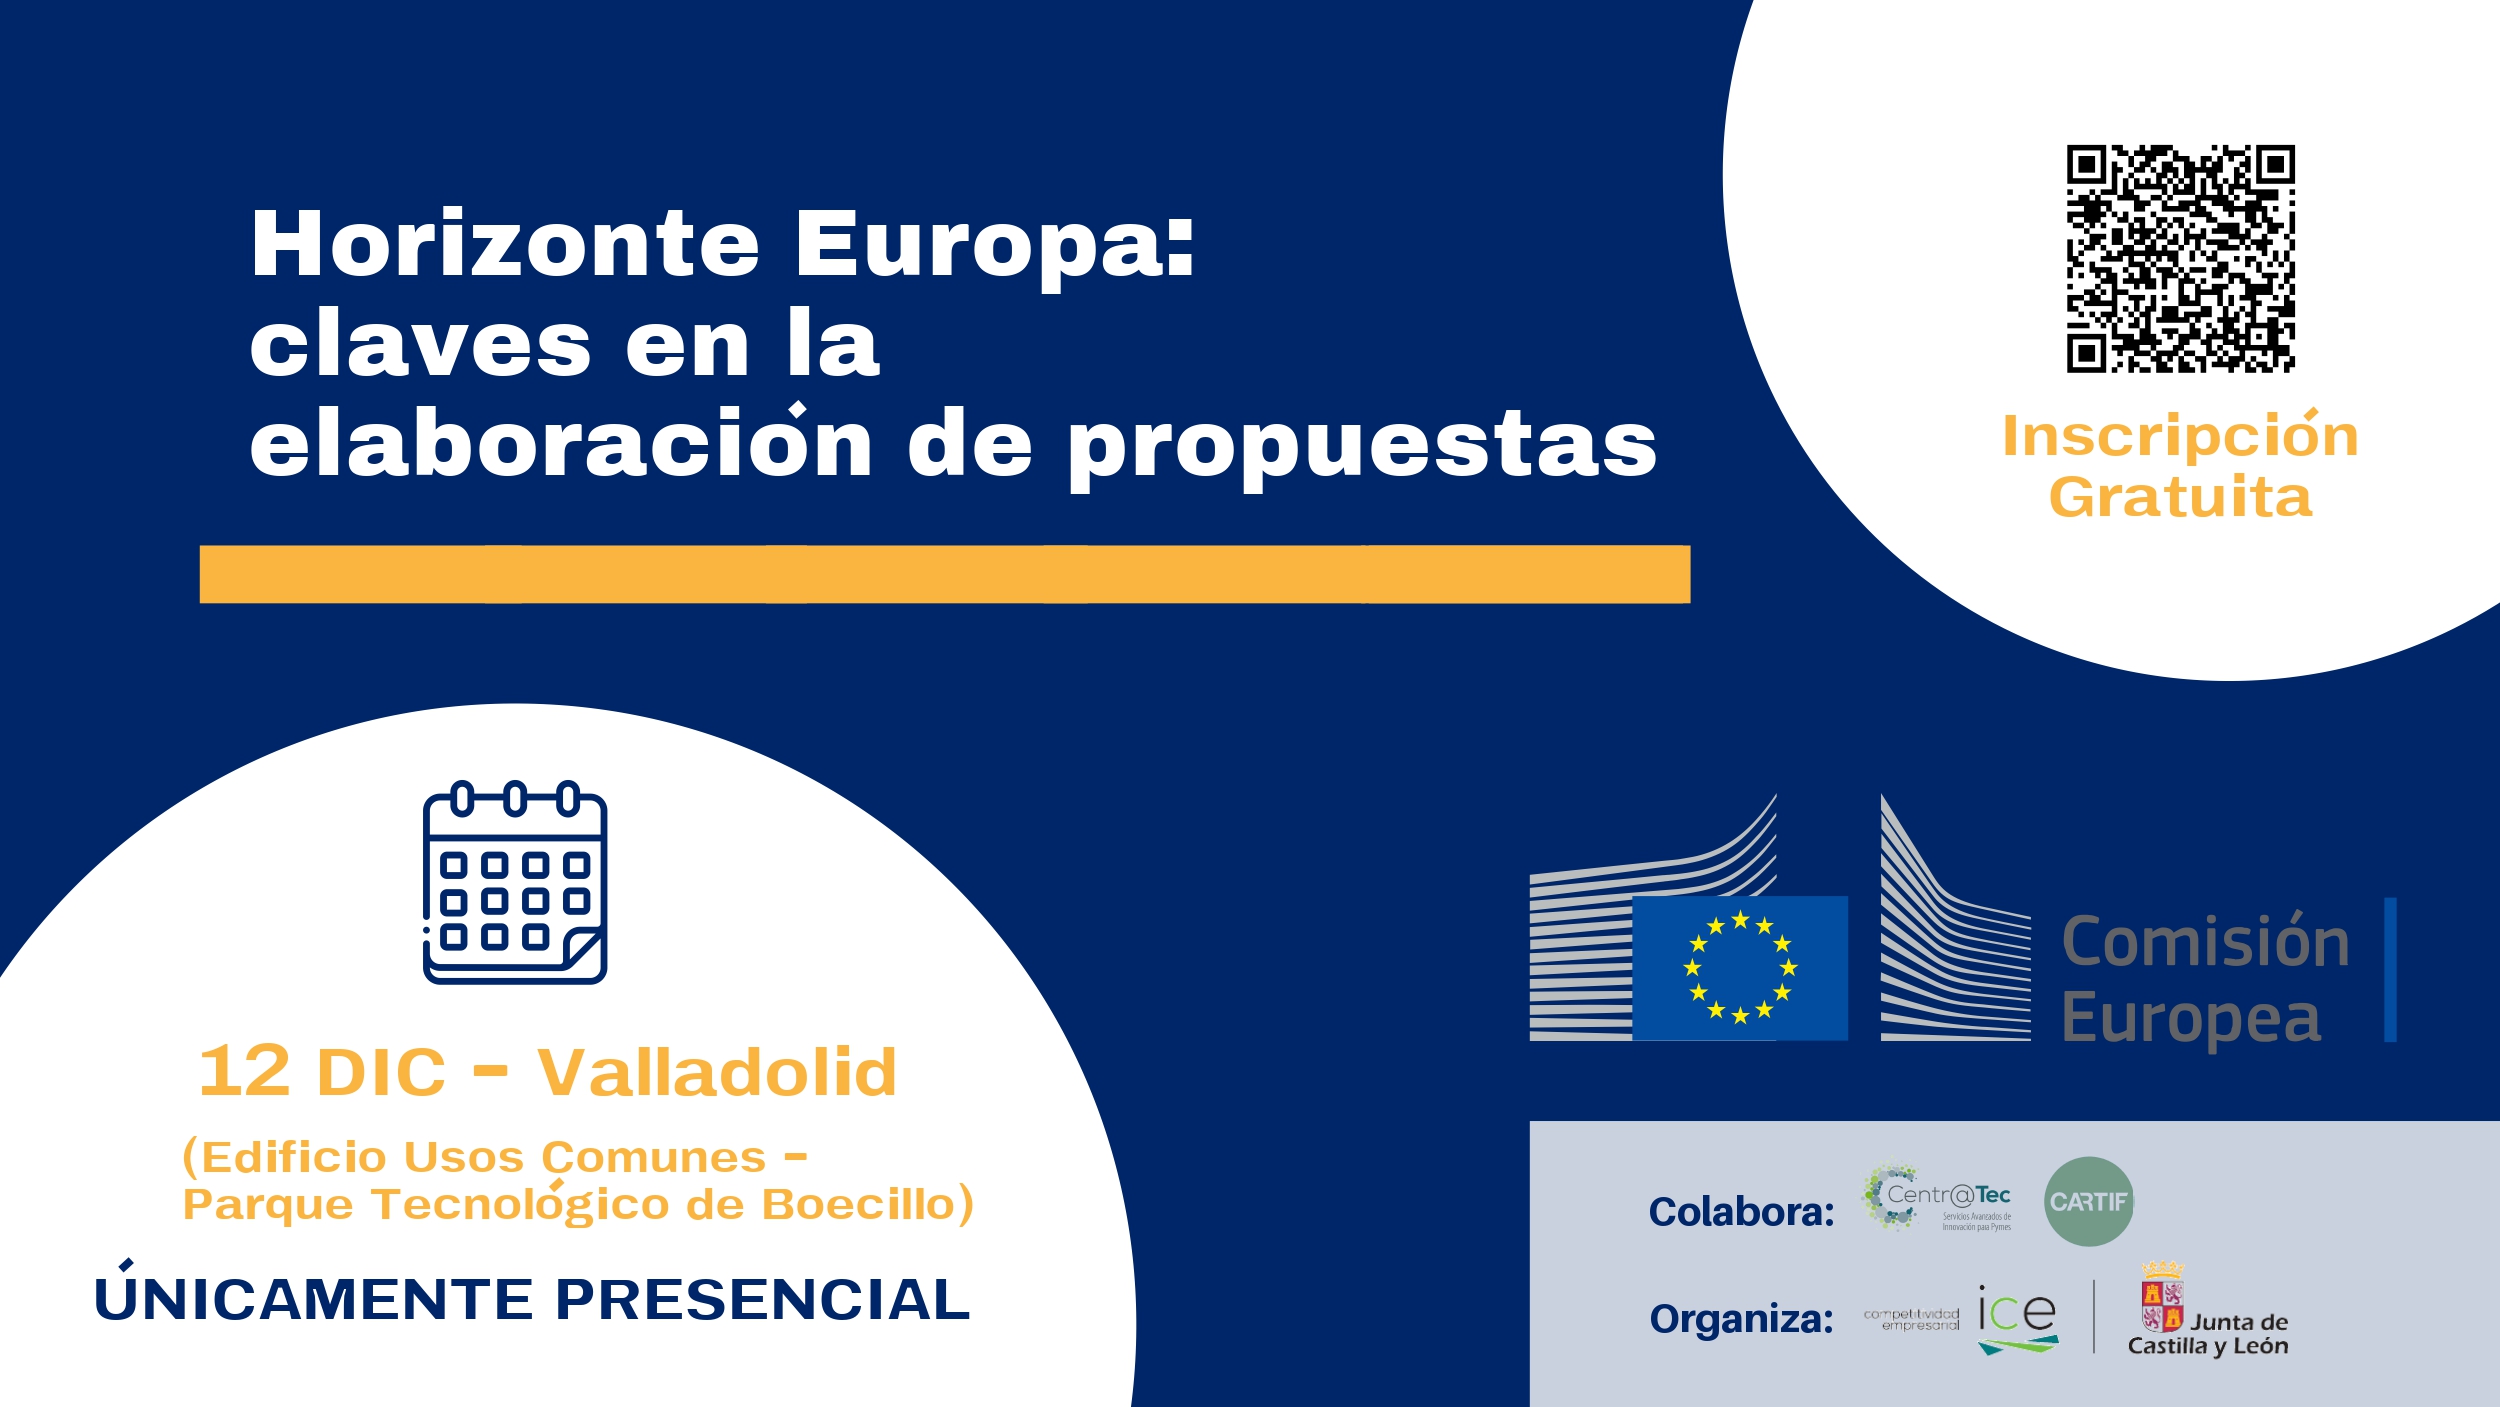 CARTIF organiza una jornada avanzada sobre el programa de financiación europea Horizonte Europa en Valladolid